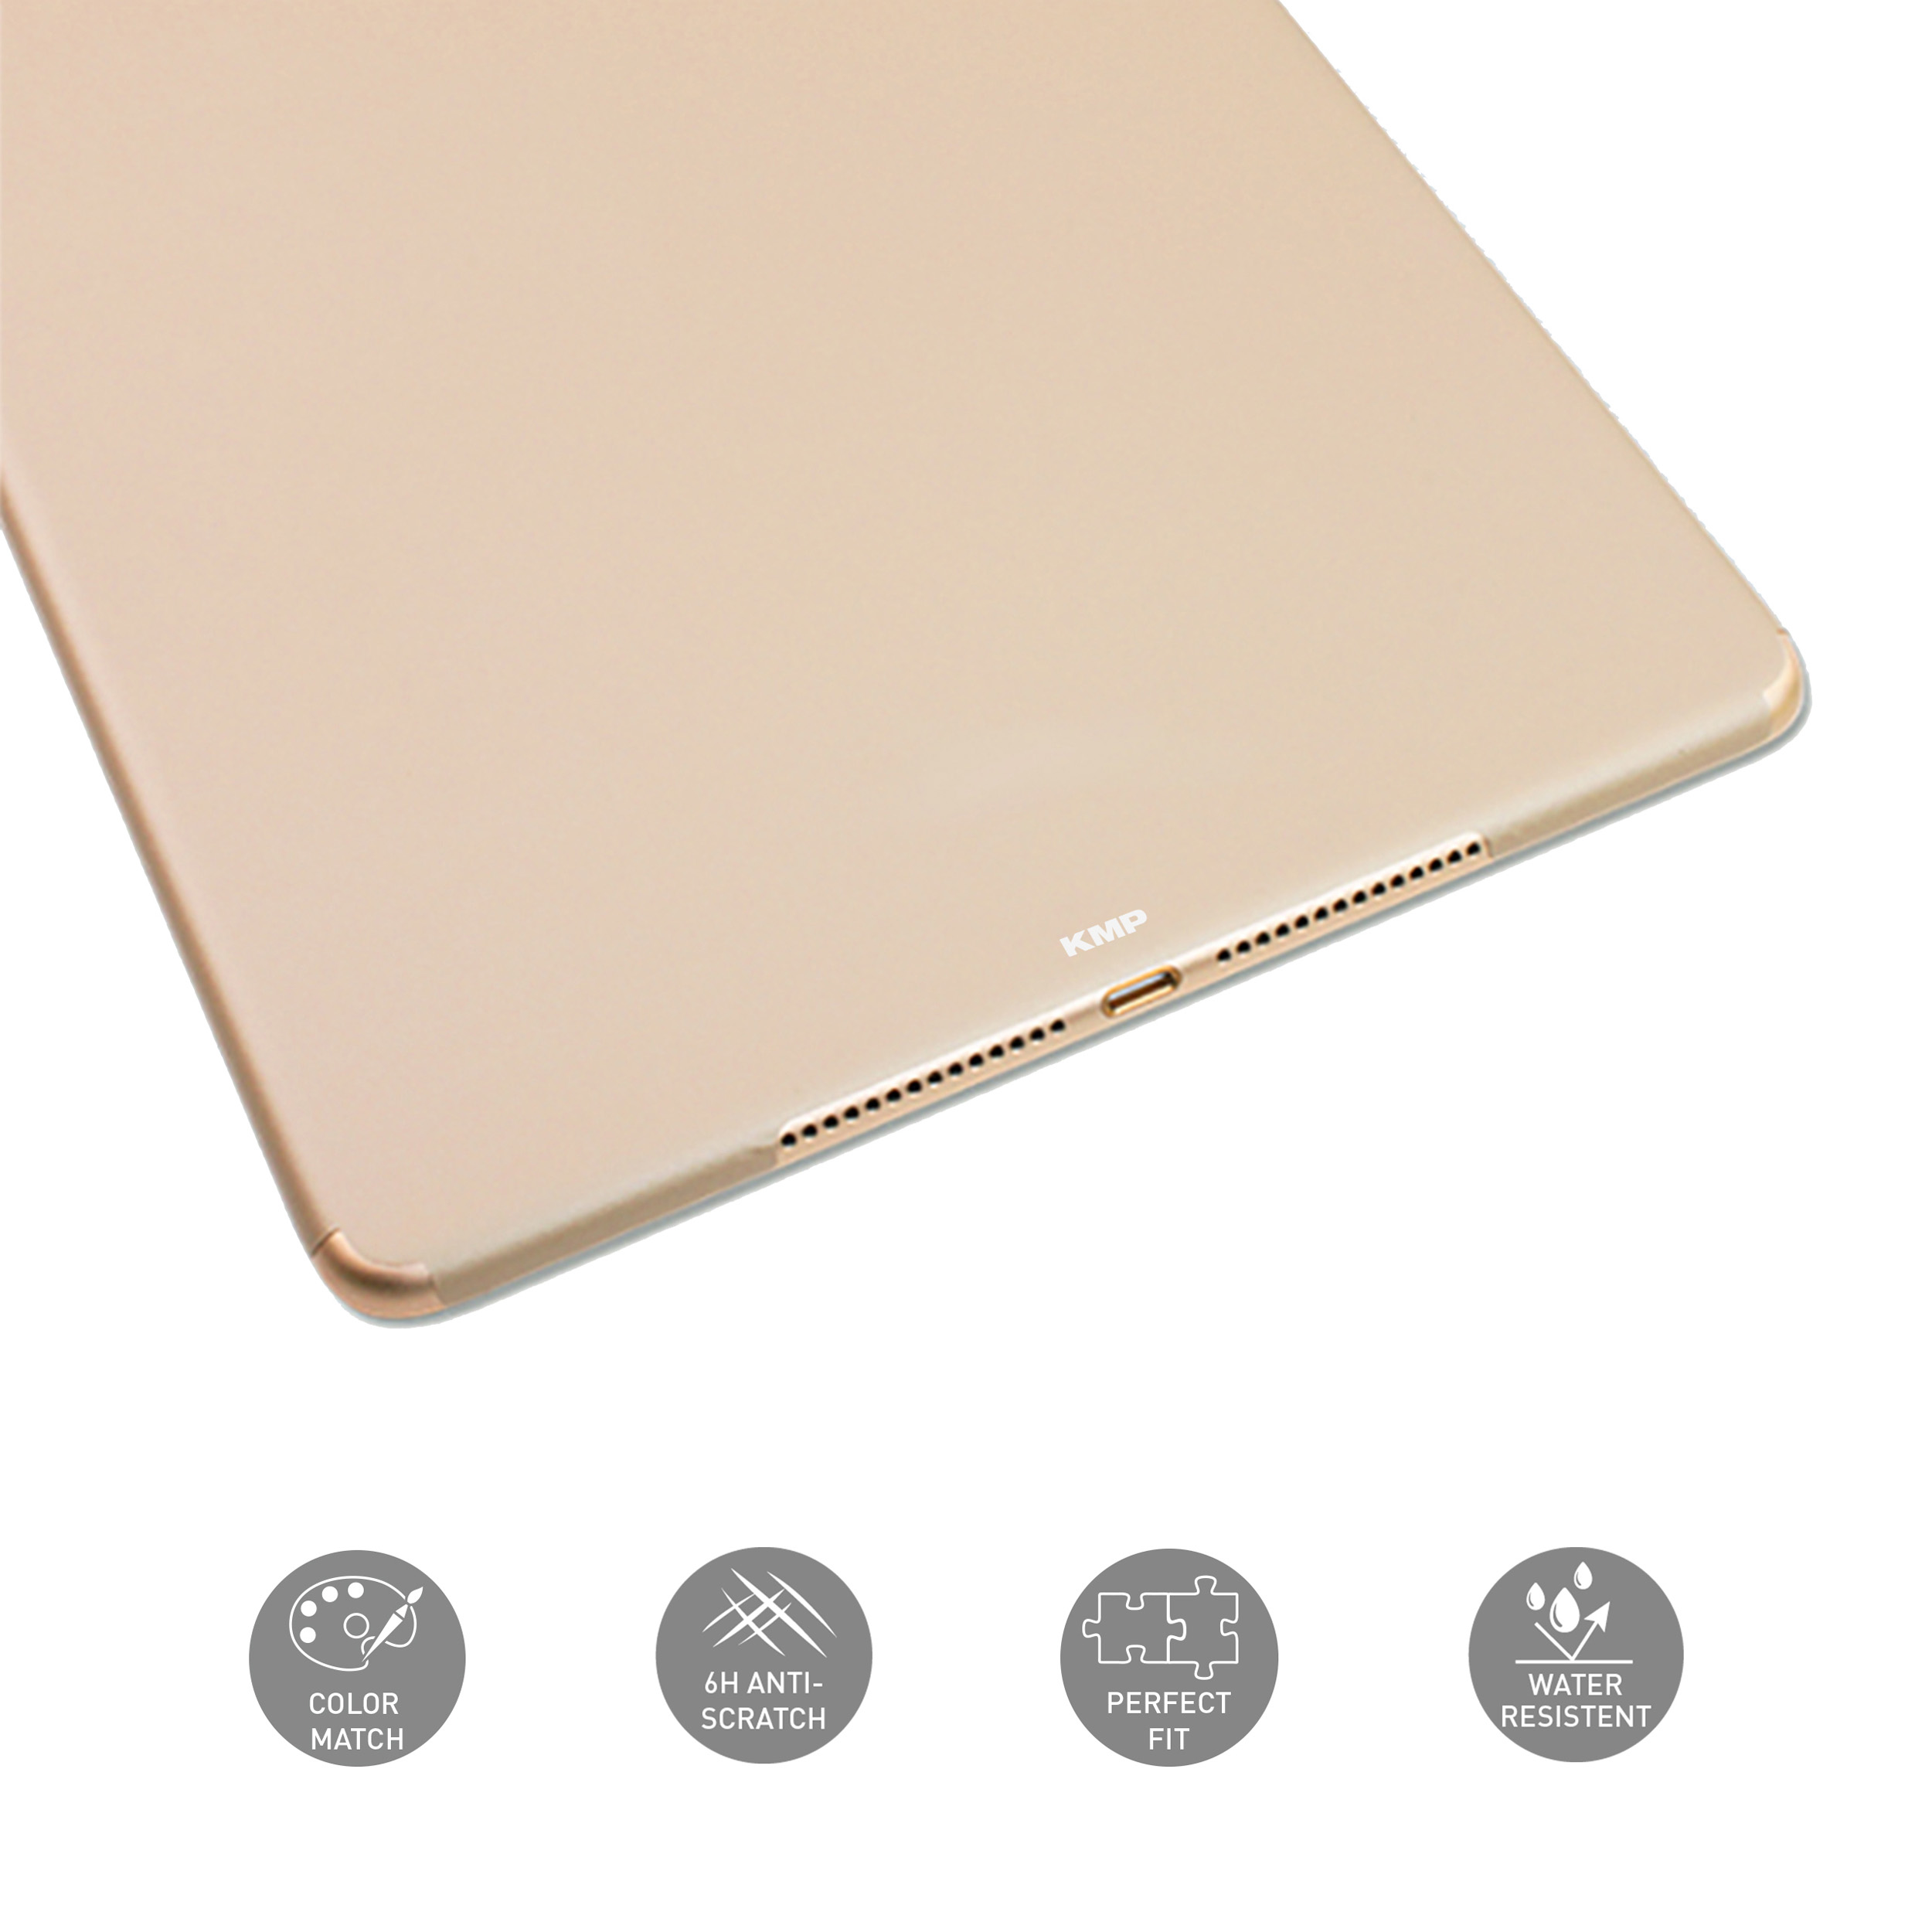 Vinylfilm, für iPad Rückseite iPad Protective Gold Apple 3M-Material, 6H gold Flip für Schutzfolie Gen. 5th/6th AntiScratchLevel, KMP skin Cover 9,7\